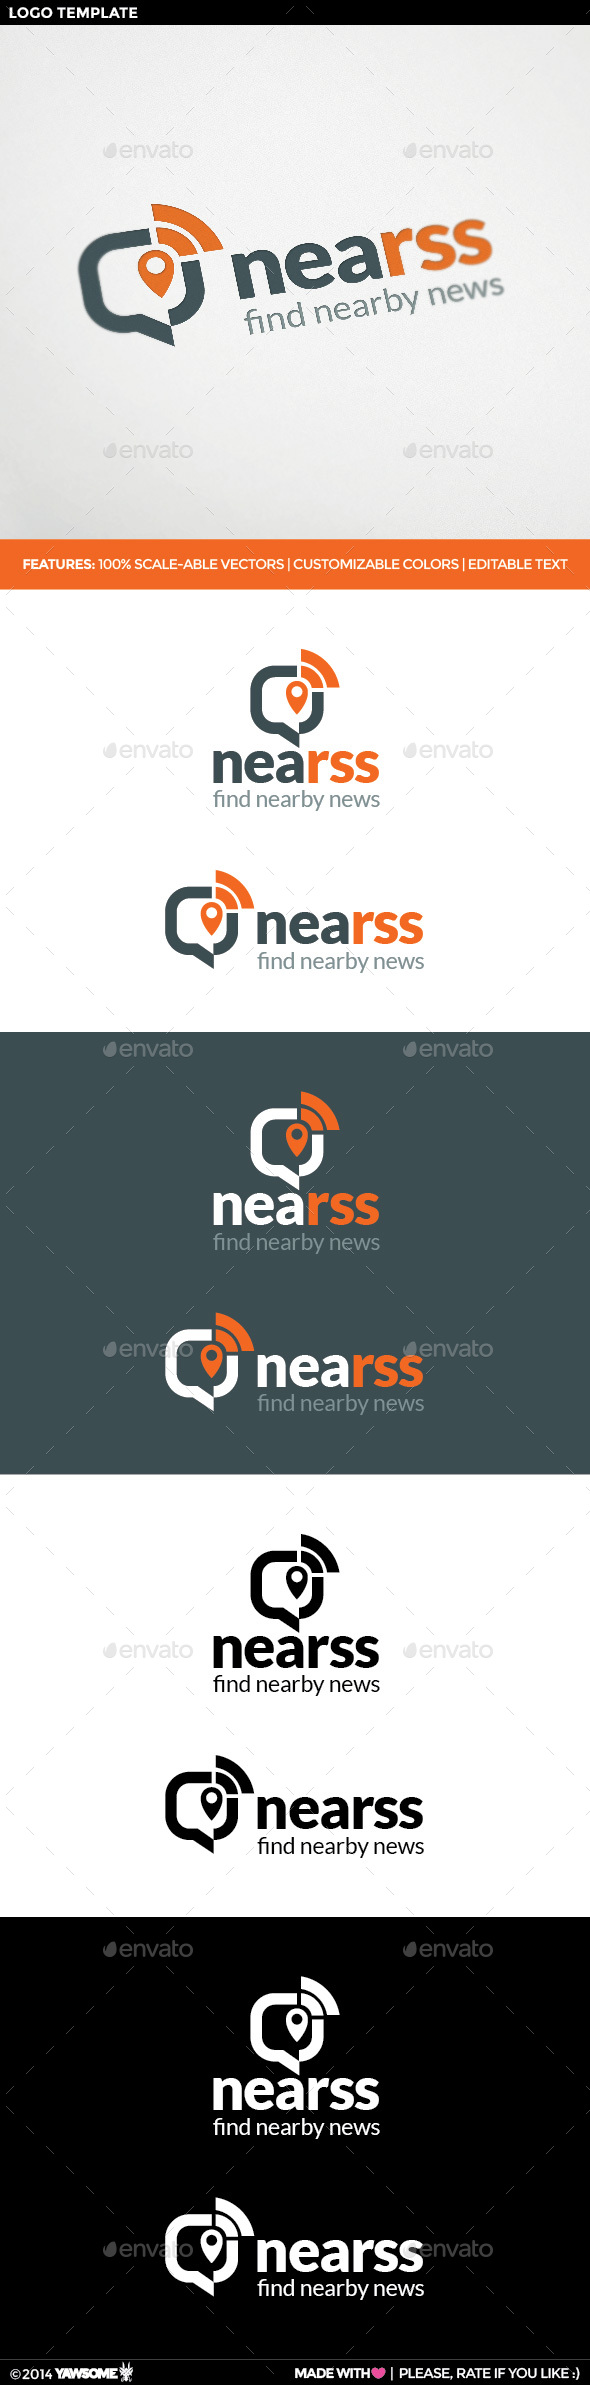 NeaRSS Logo